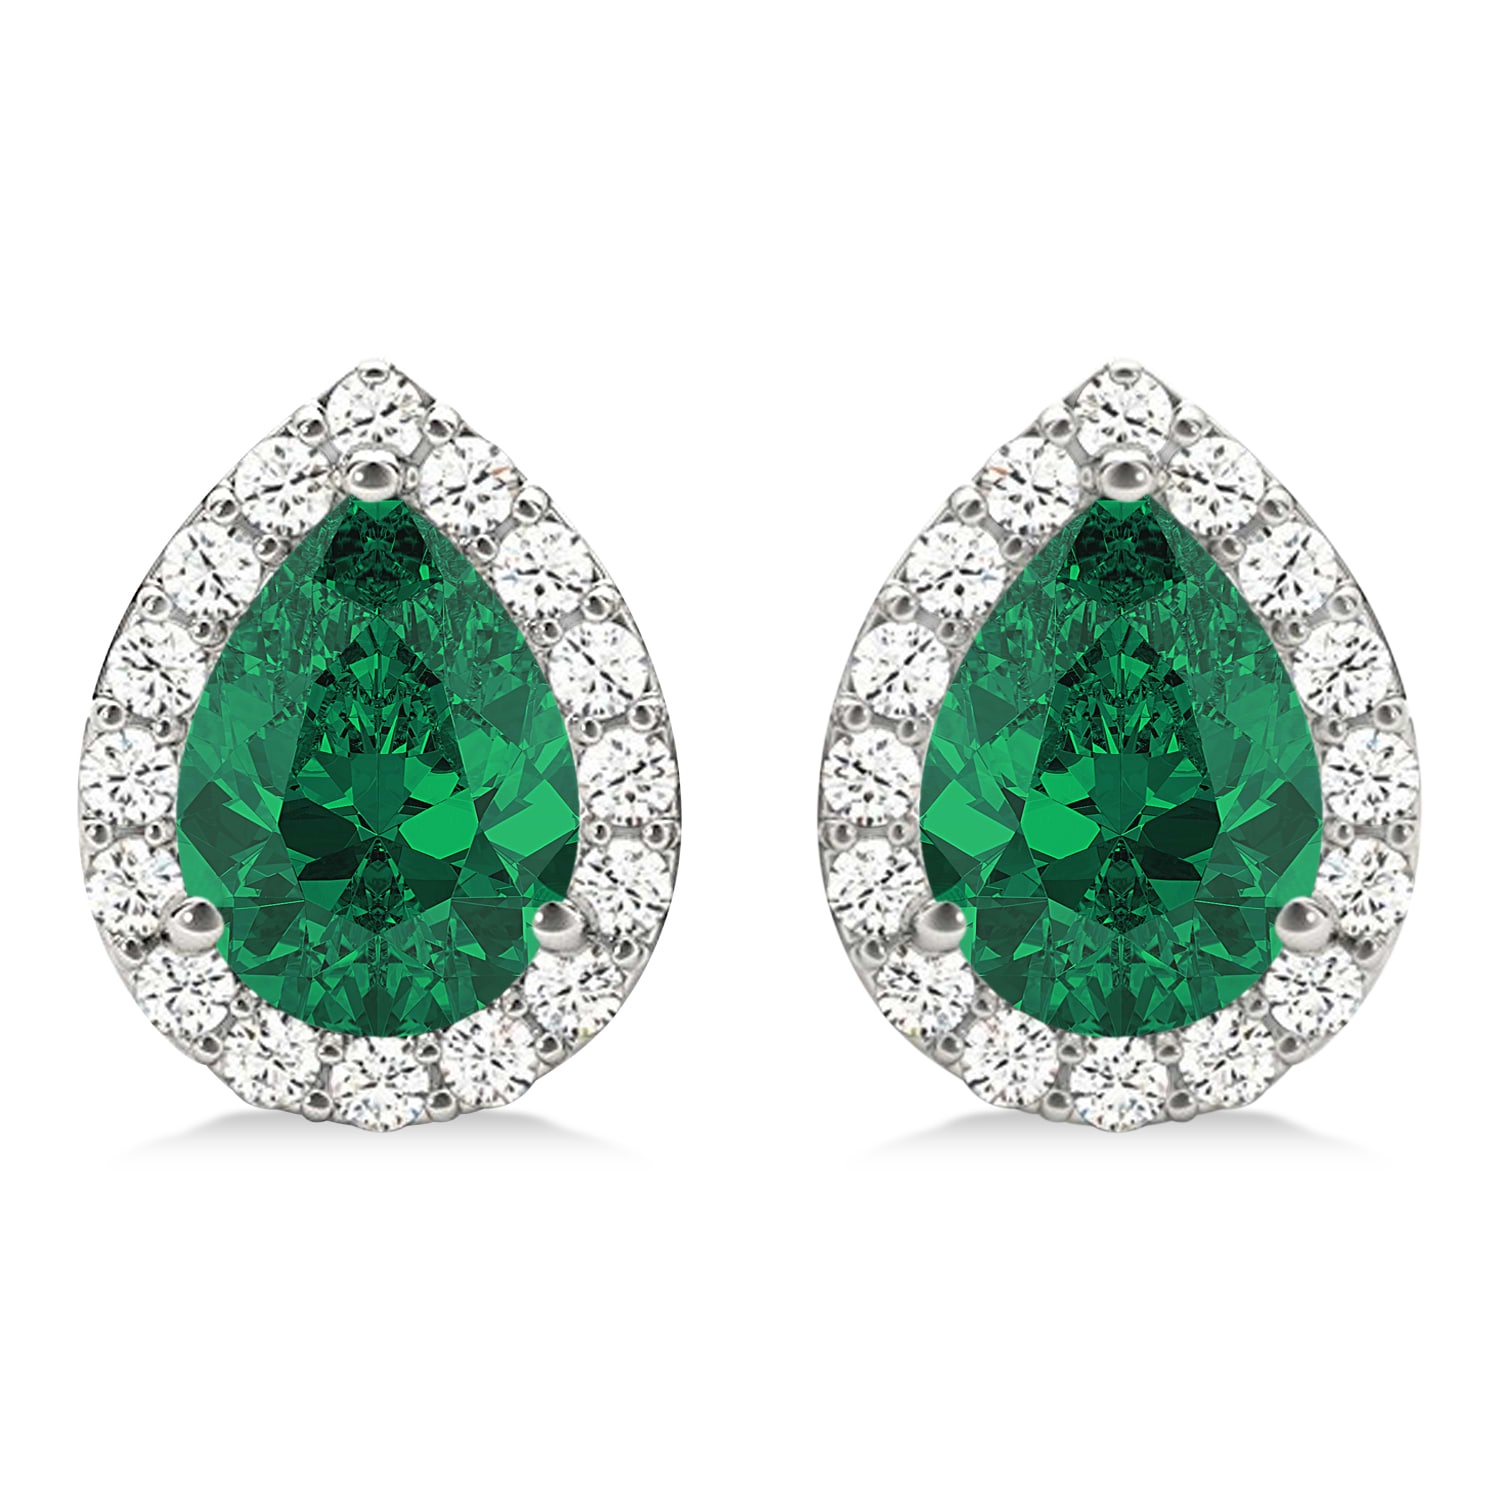 Teardrop Emerald & Diamond Halo Earrings 14k White Gold (1.64ct)